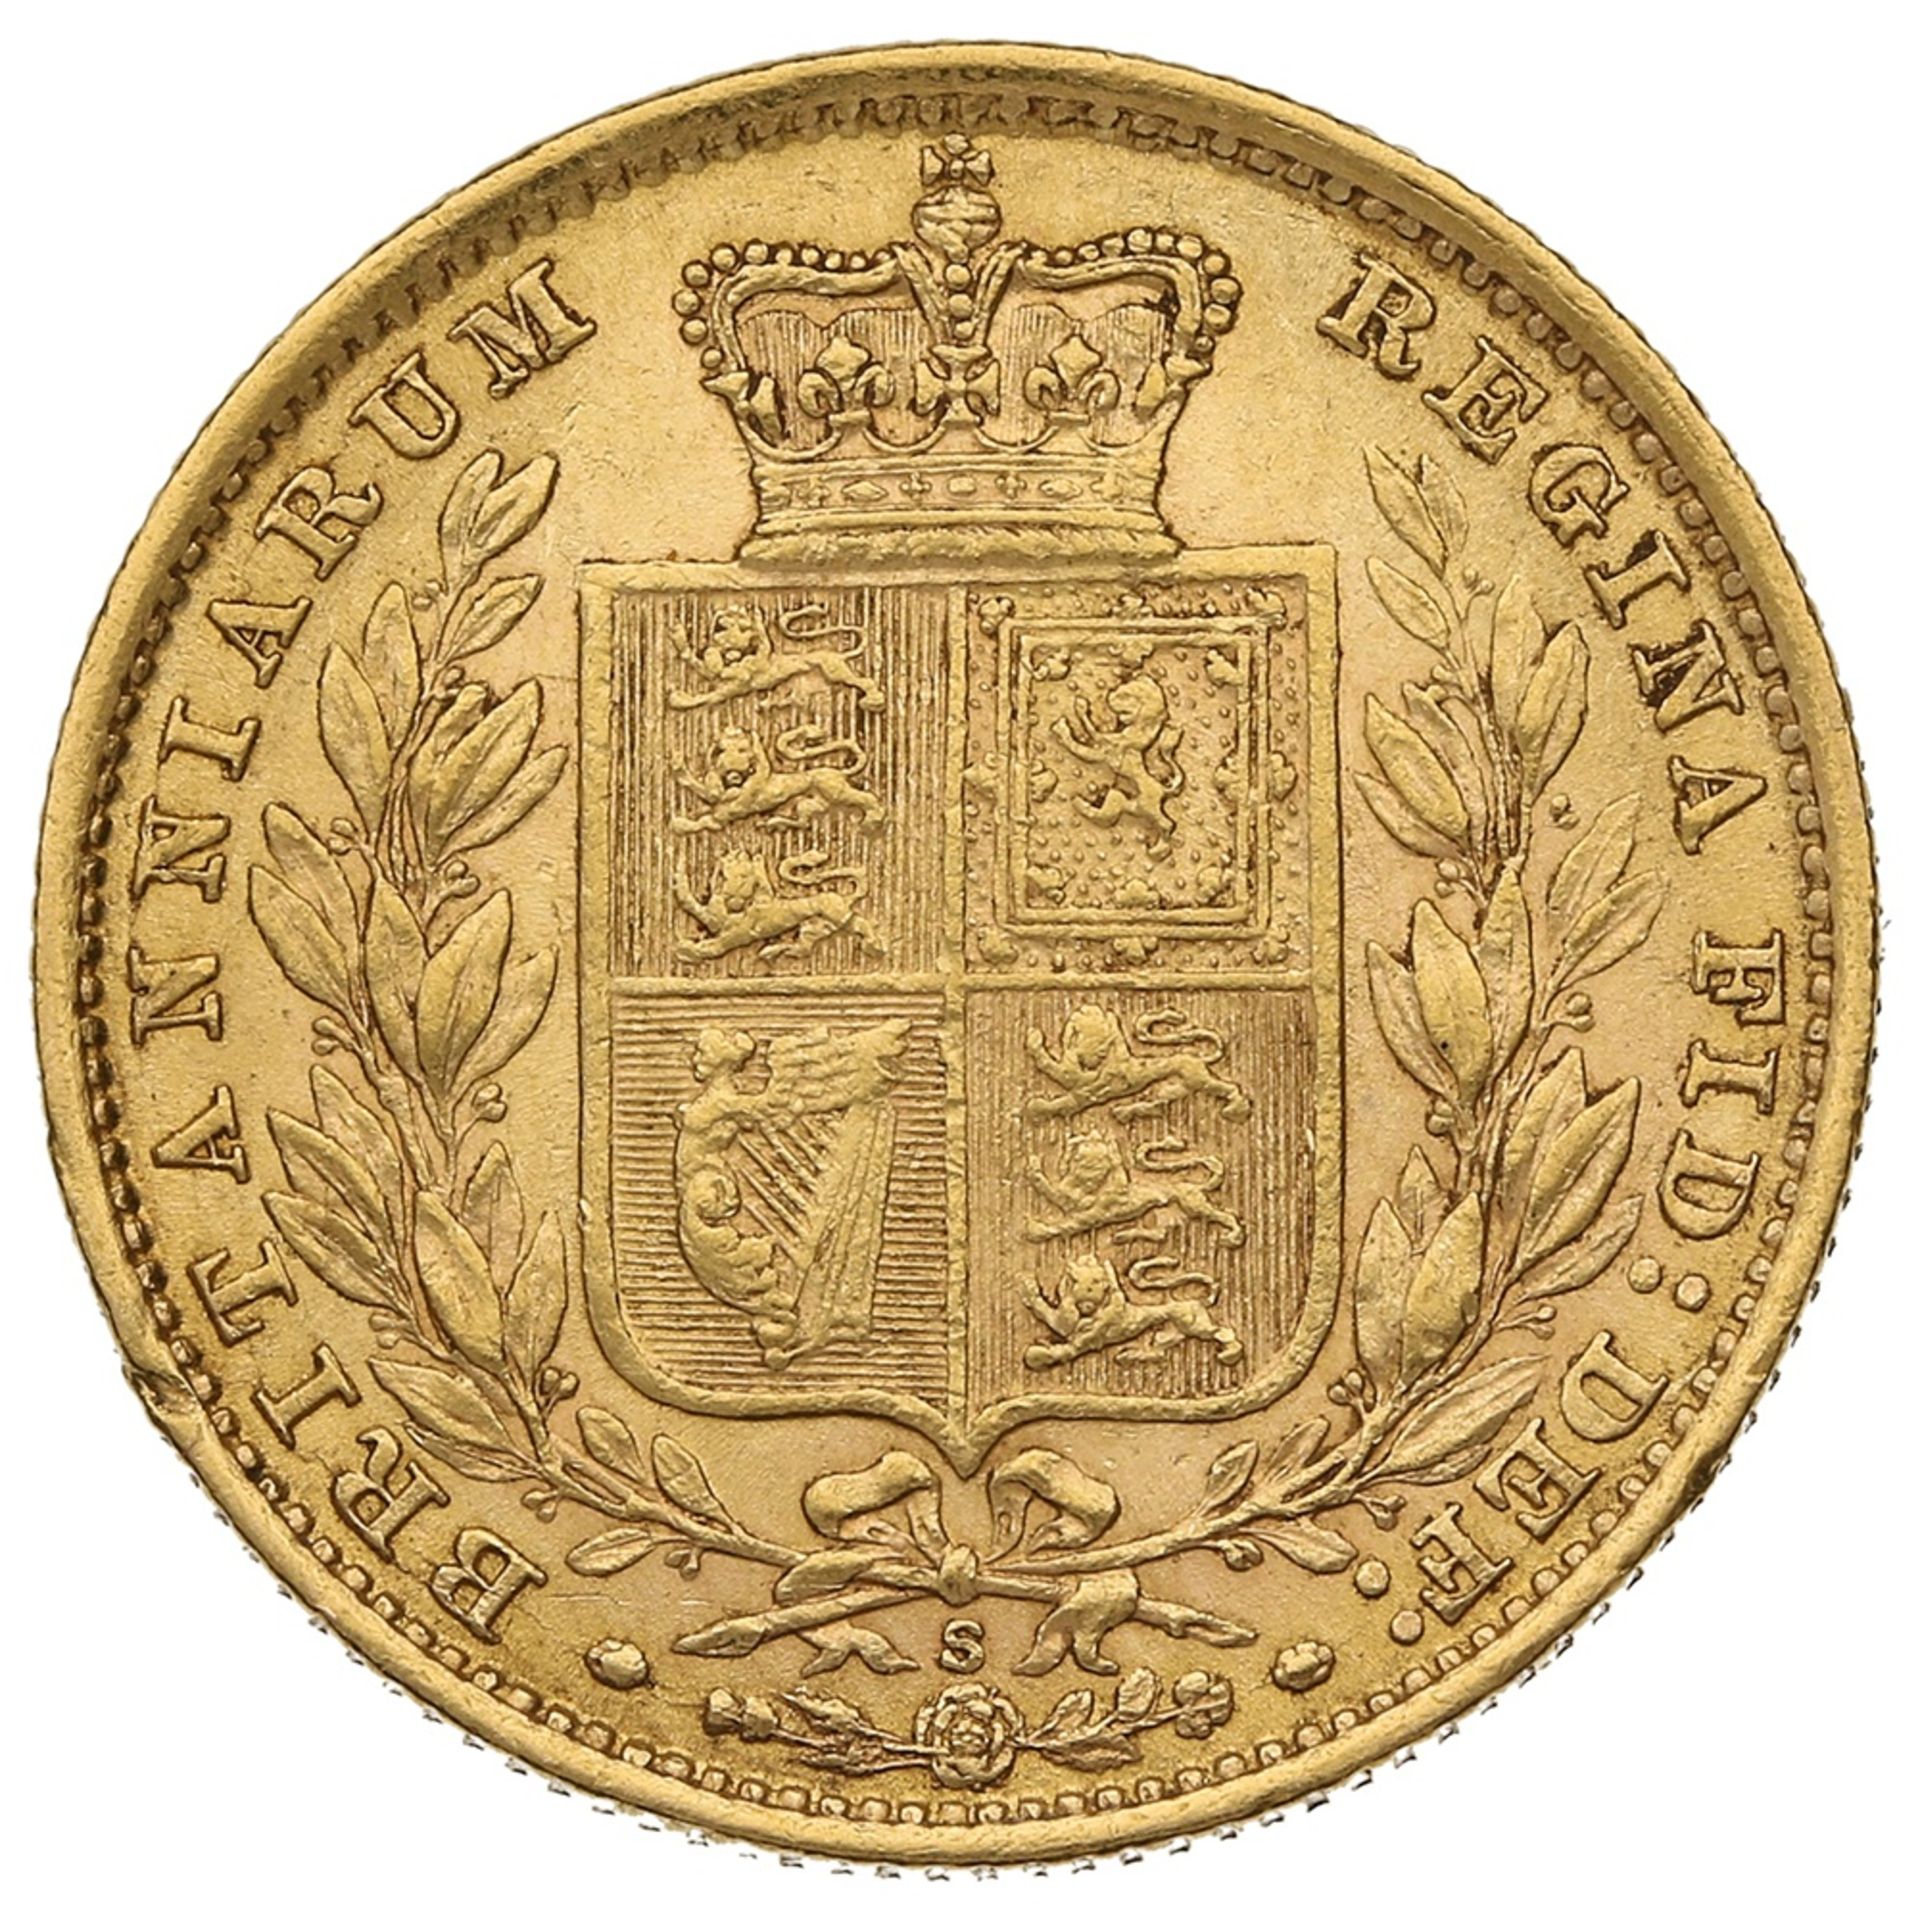 1973 Isle of Man, Elizabeth II, gold Sovereign - Image 2 of 2